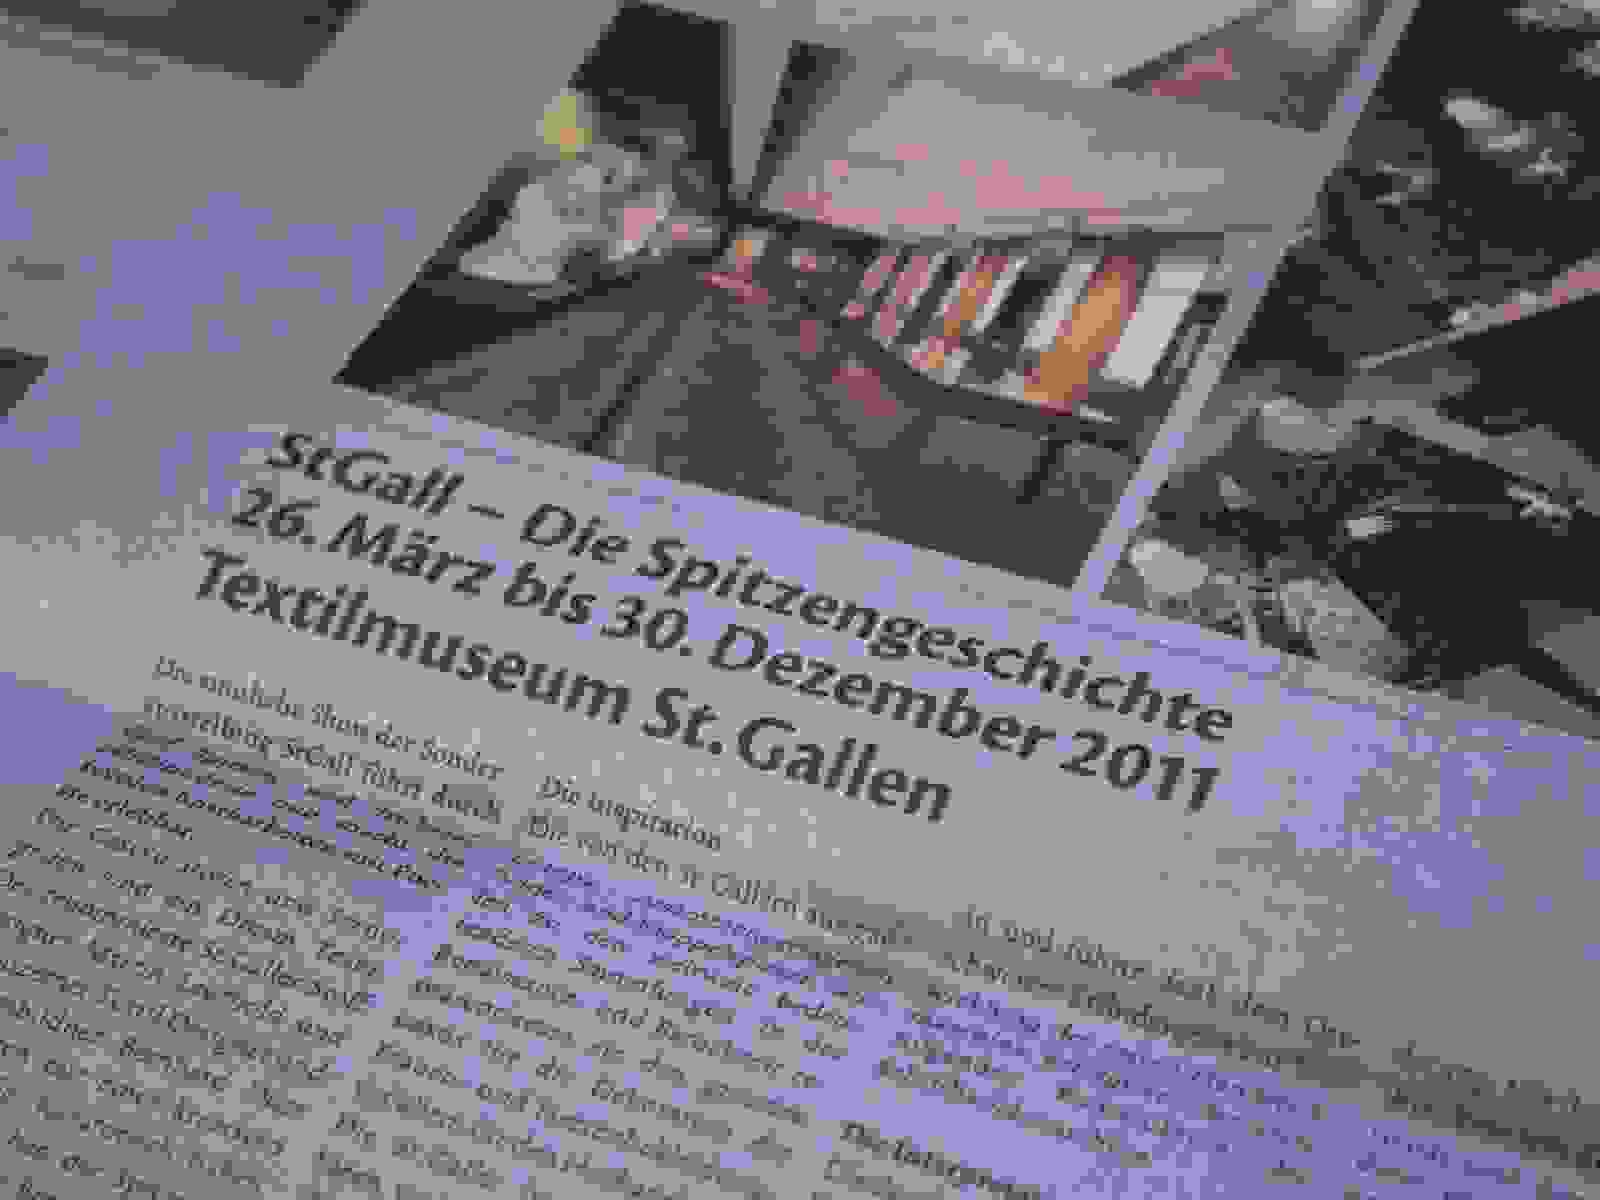 Zeitungsbericht St.Gall